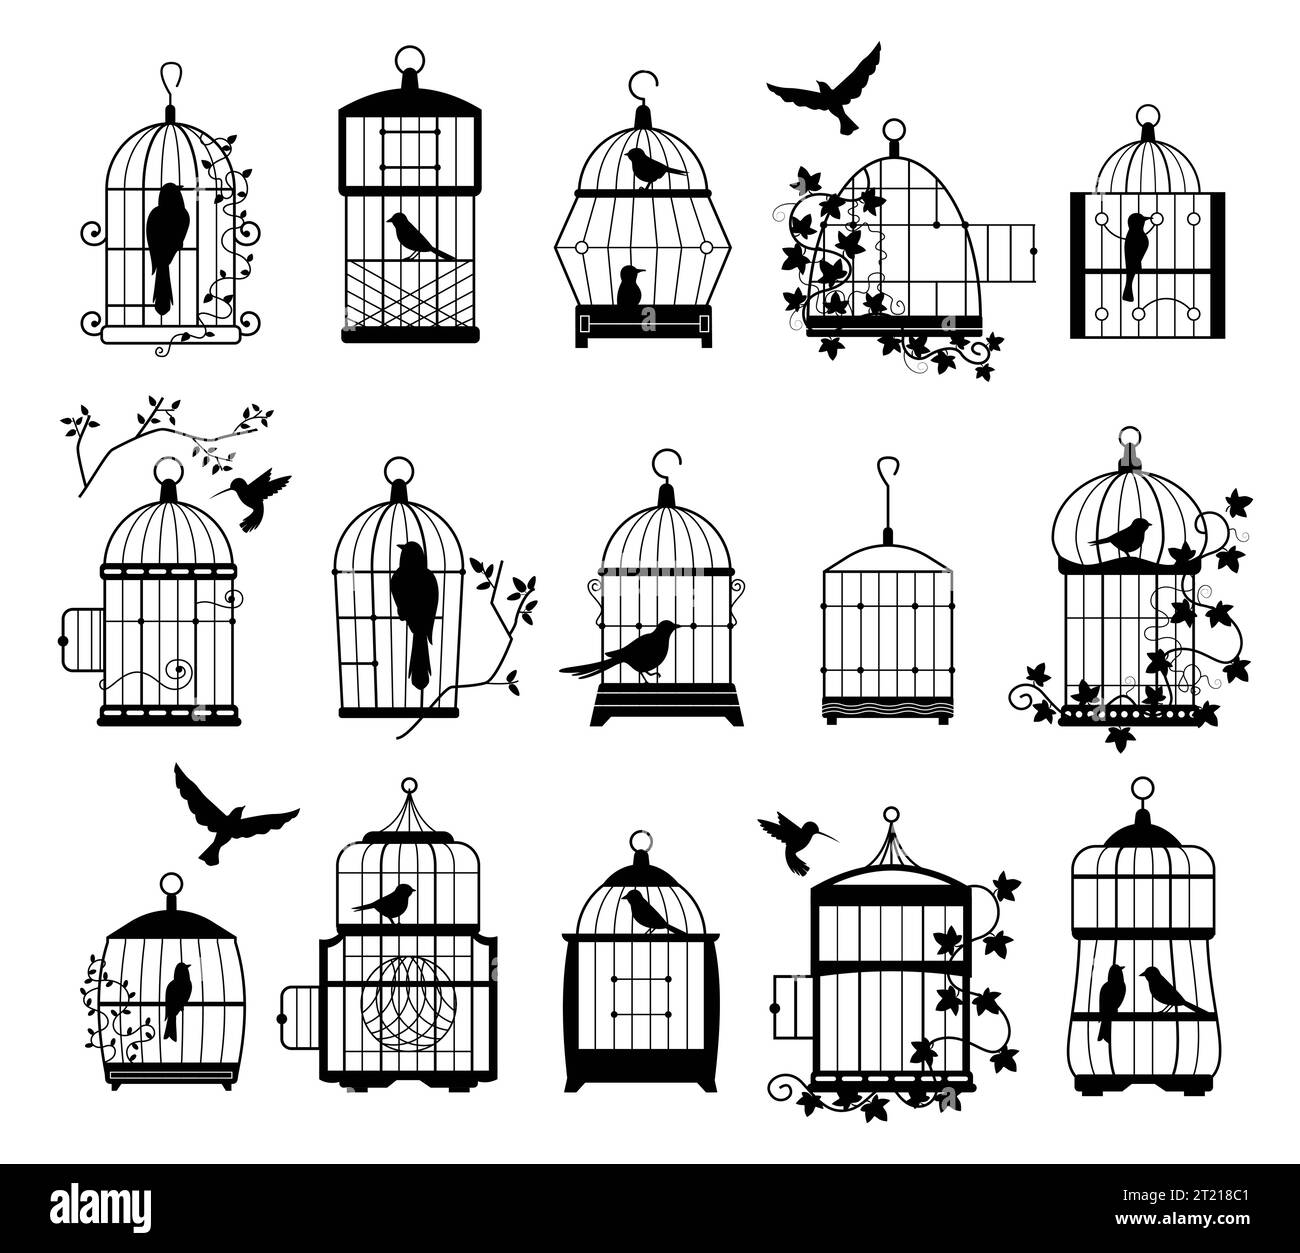 Cages à oiseaux avec silhouettes d'oiseaux. Décalcomanies murales noires avec des oiseaux volants dans des cages, art décoratif minimaliste pour l'intérieur. Collection isolée de vecteurs Illustration de Vecteur